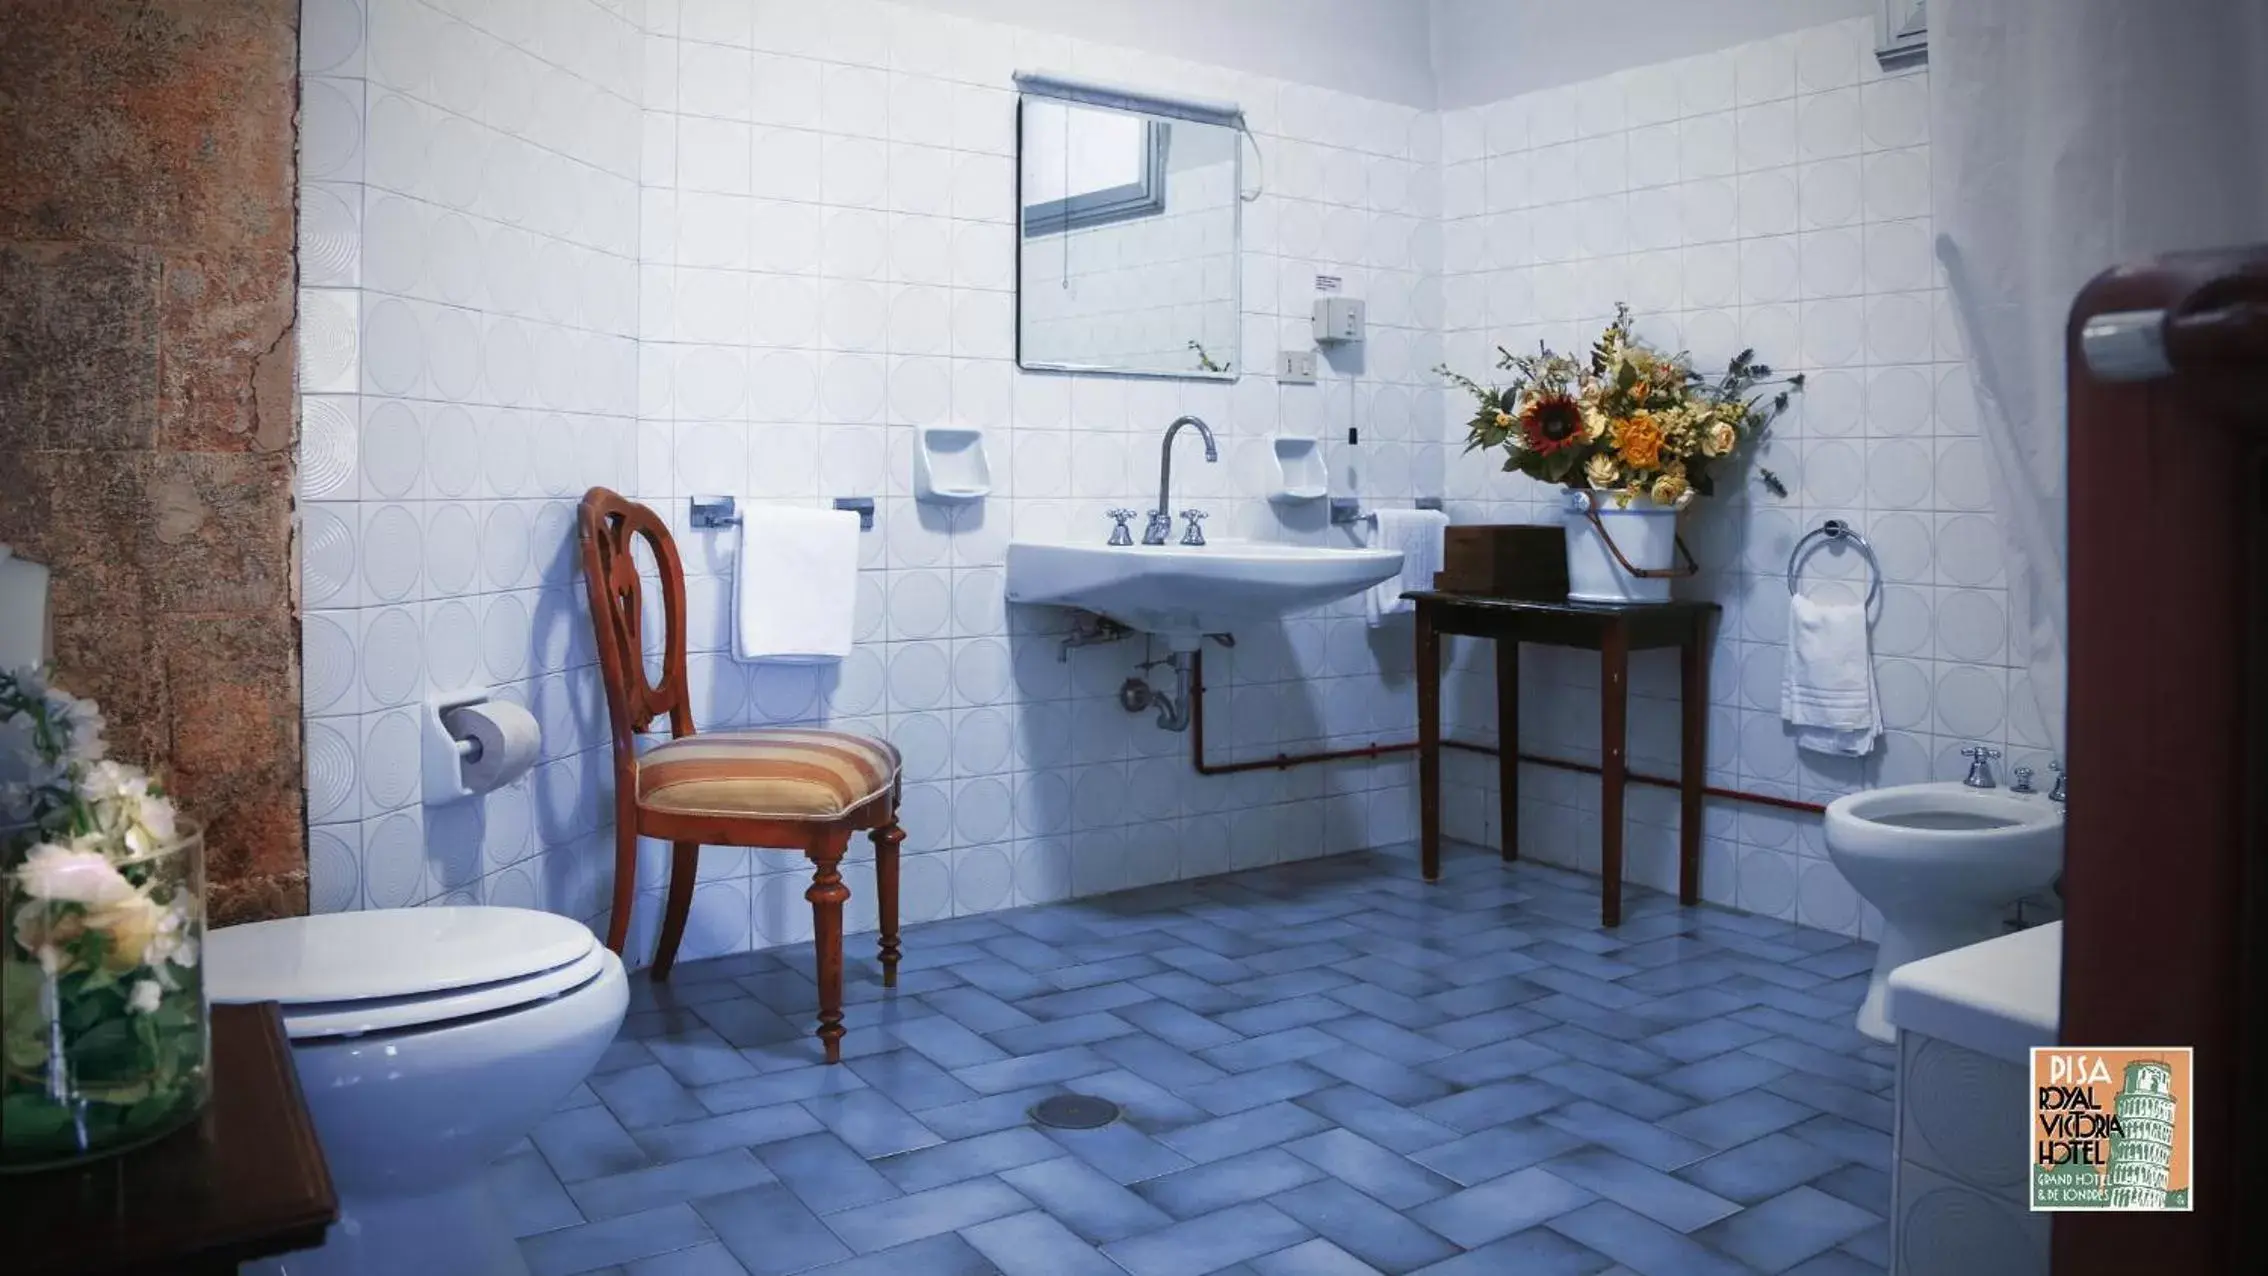 Bathroom in Royal Victoria Hotel